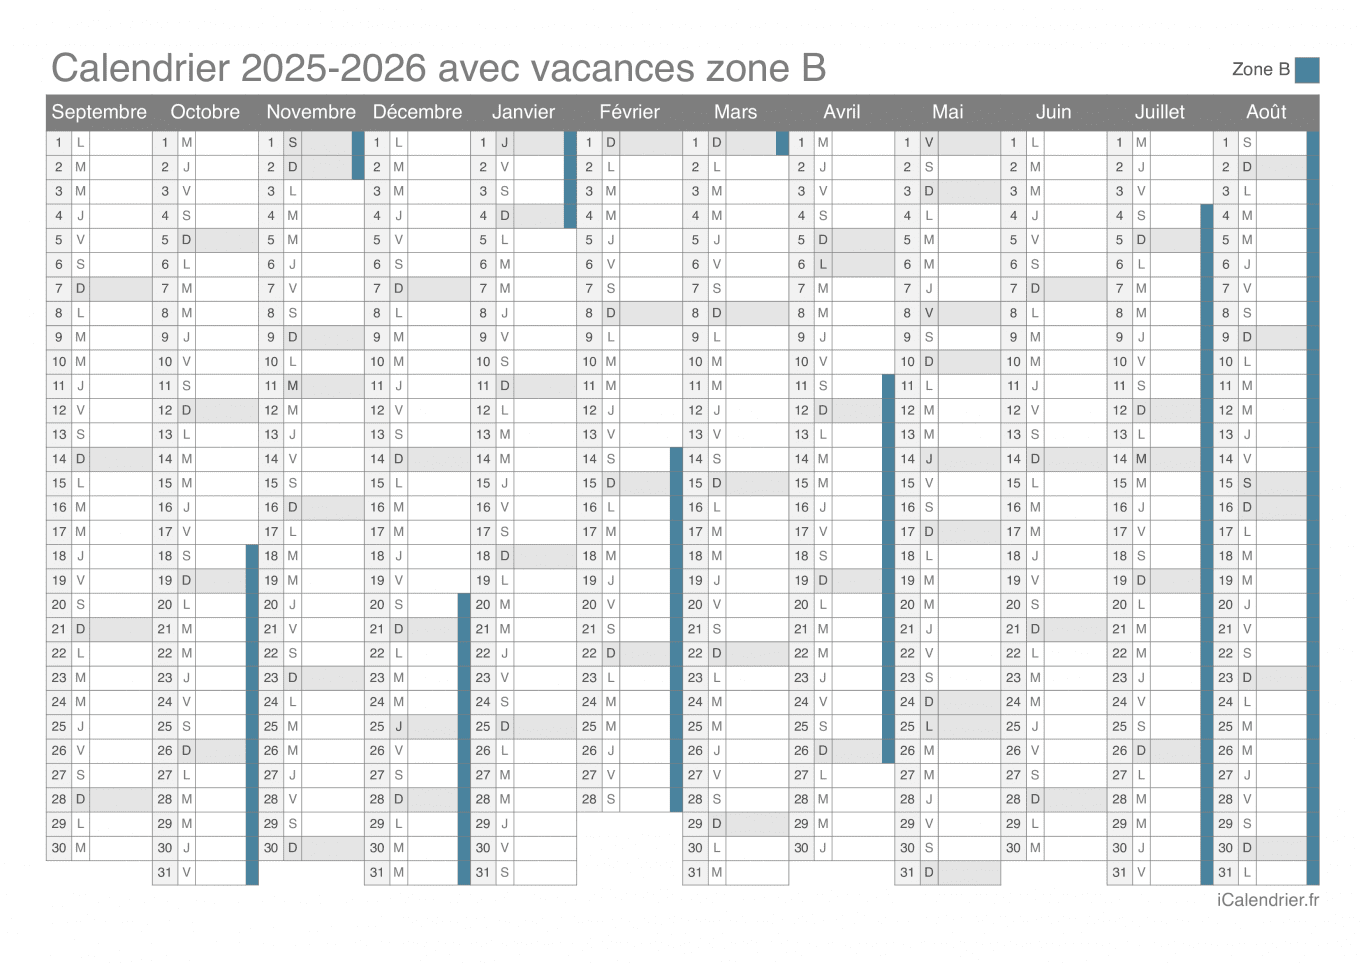 Calendrier des vacances scolaires 2025-2026 de la zone B